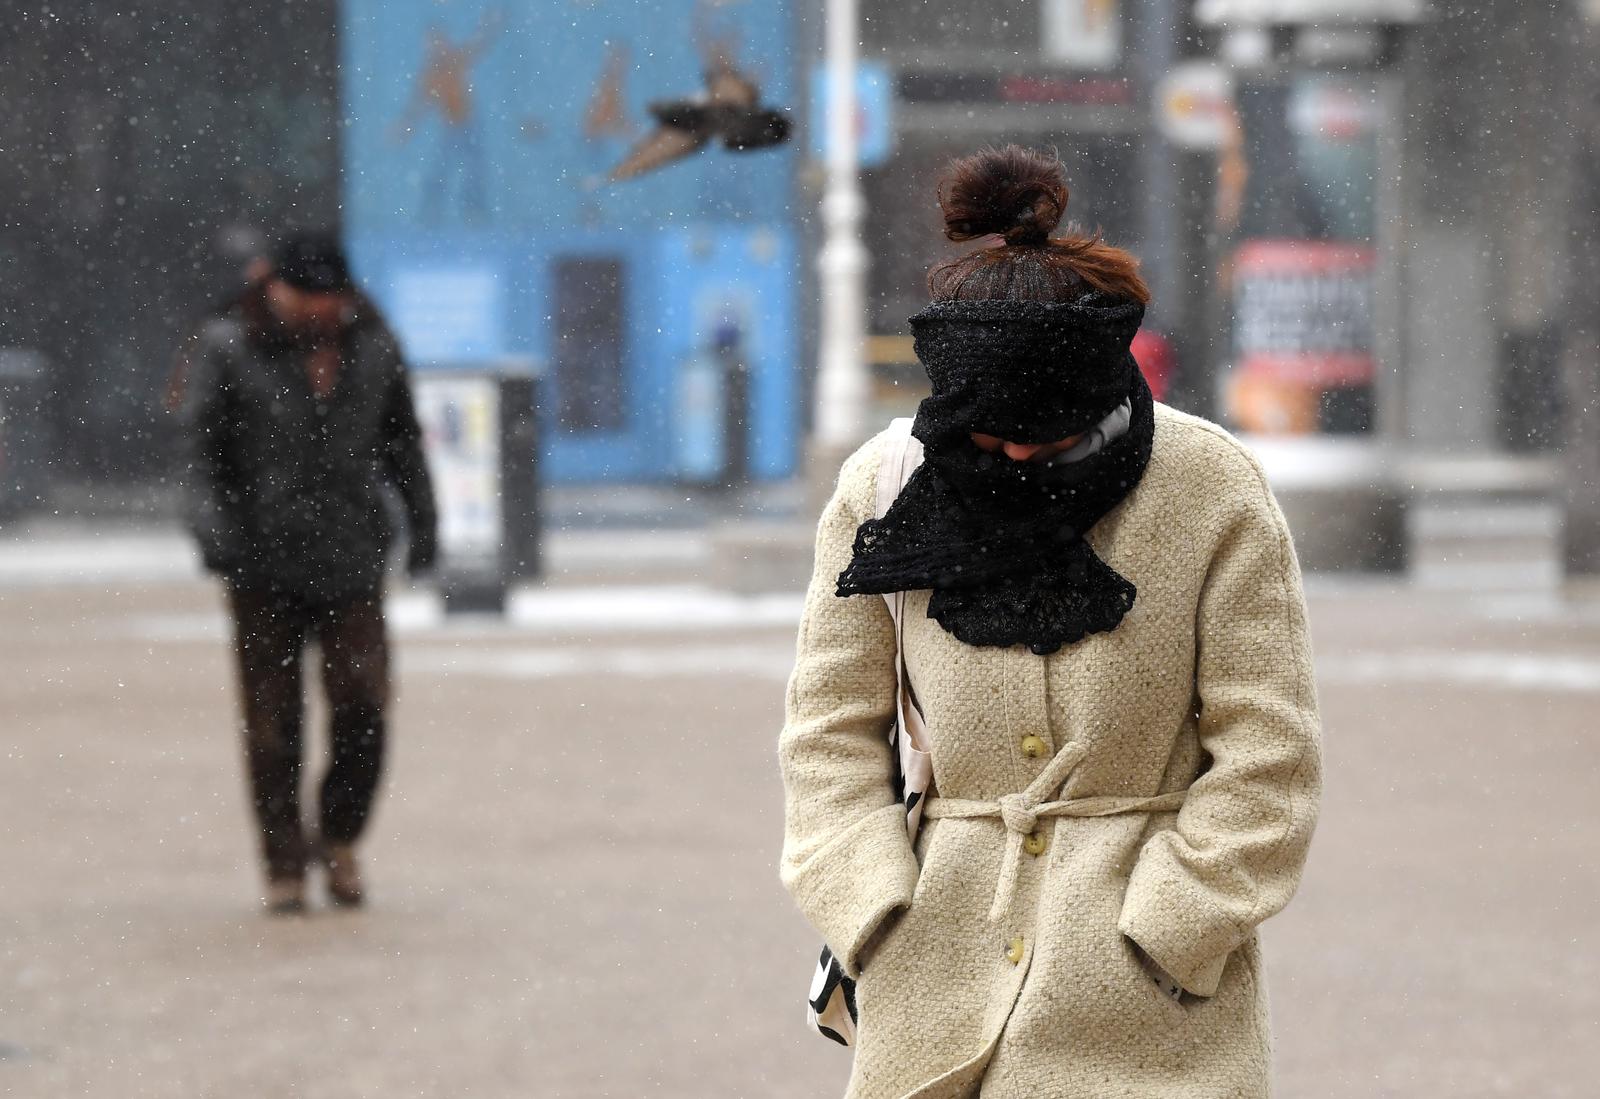 26.02.2018., Zagreb - Val hladnoce zahvatio je Hrvatsku. U gradu Zagrebu u 7 sati ujutro izmjereno je -10 stupnjeva Celzijevih. Kako bi se zastitili od hladnoce, gradjane se upozorava da kratko borave na hladnom zraku te da se odjevaju slojevito i koriste sal kako ne bi drektno udisali hladan zrak.  Niske temperature, vjetar i snijeg otezavaju gradjanima u obavljanju svakodnevnih obaveza. Photo: Marko Lukunic/PIXSELL